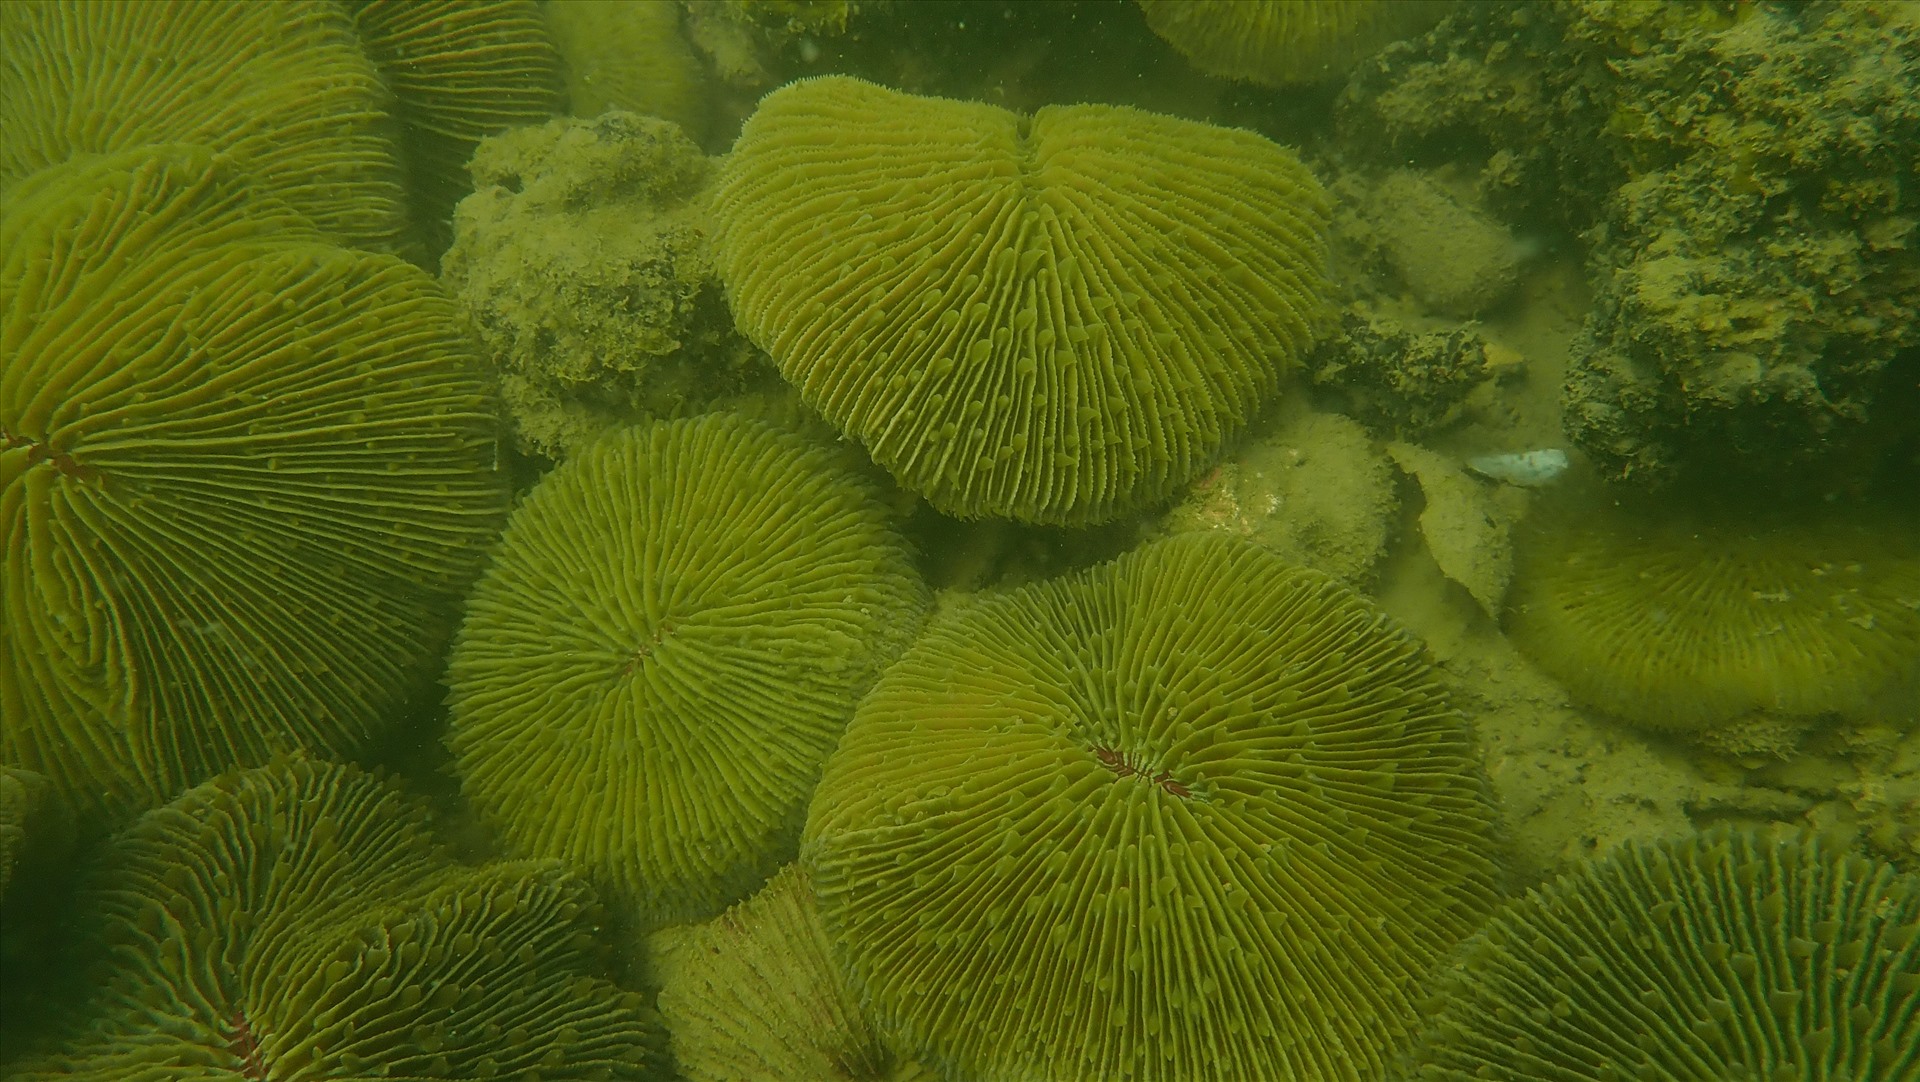 Sự phục hồi kỳ diệu của những rạn san hô trên vịnh Hạ Long